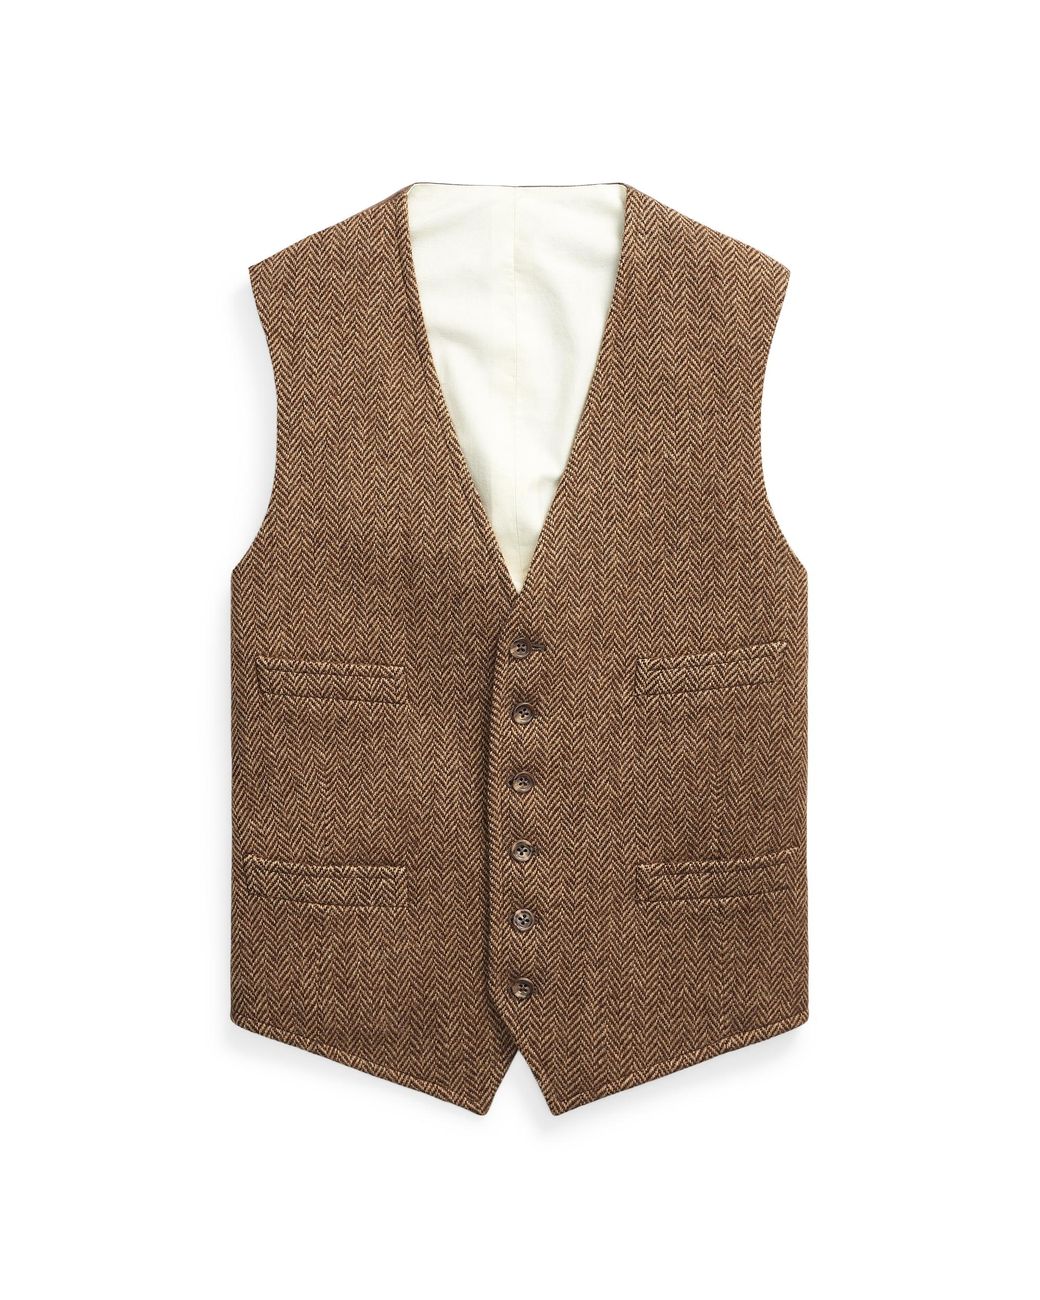 Ralph Lauren Herringbone Wool Waistcoat in Brown for Men - Lyst